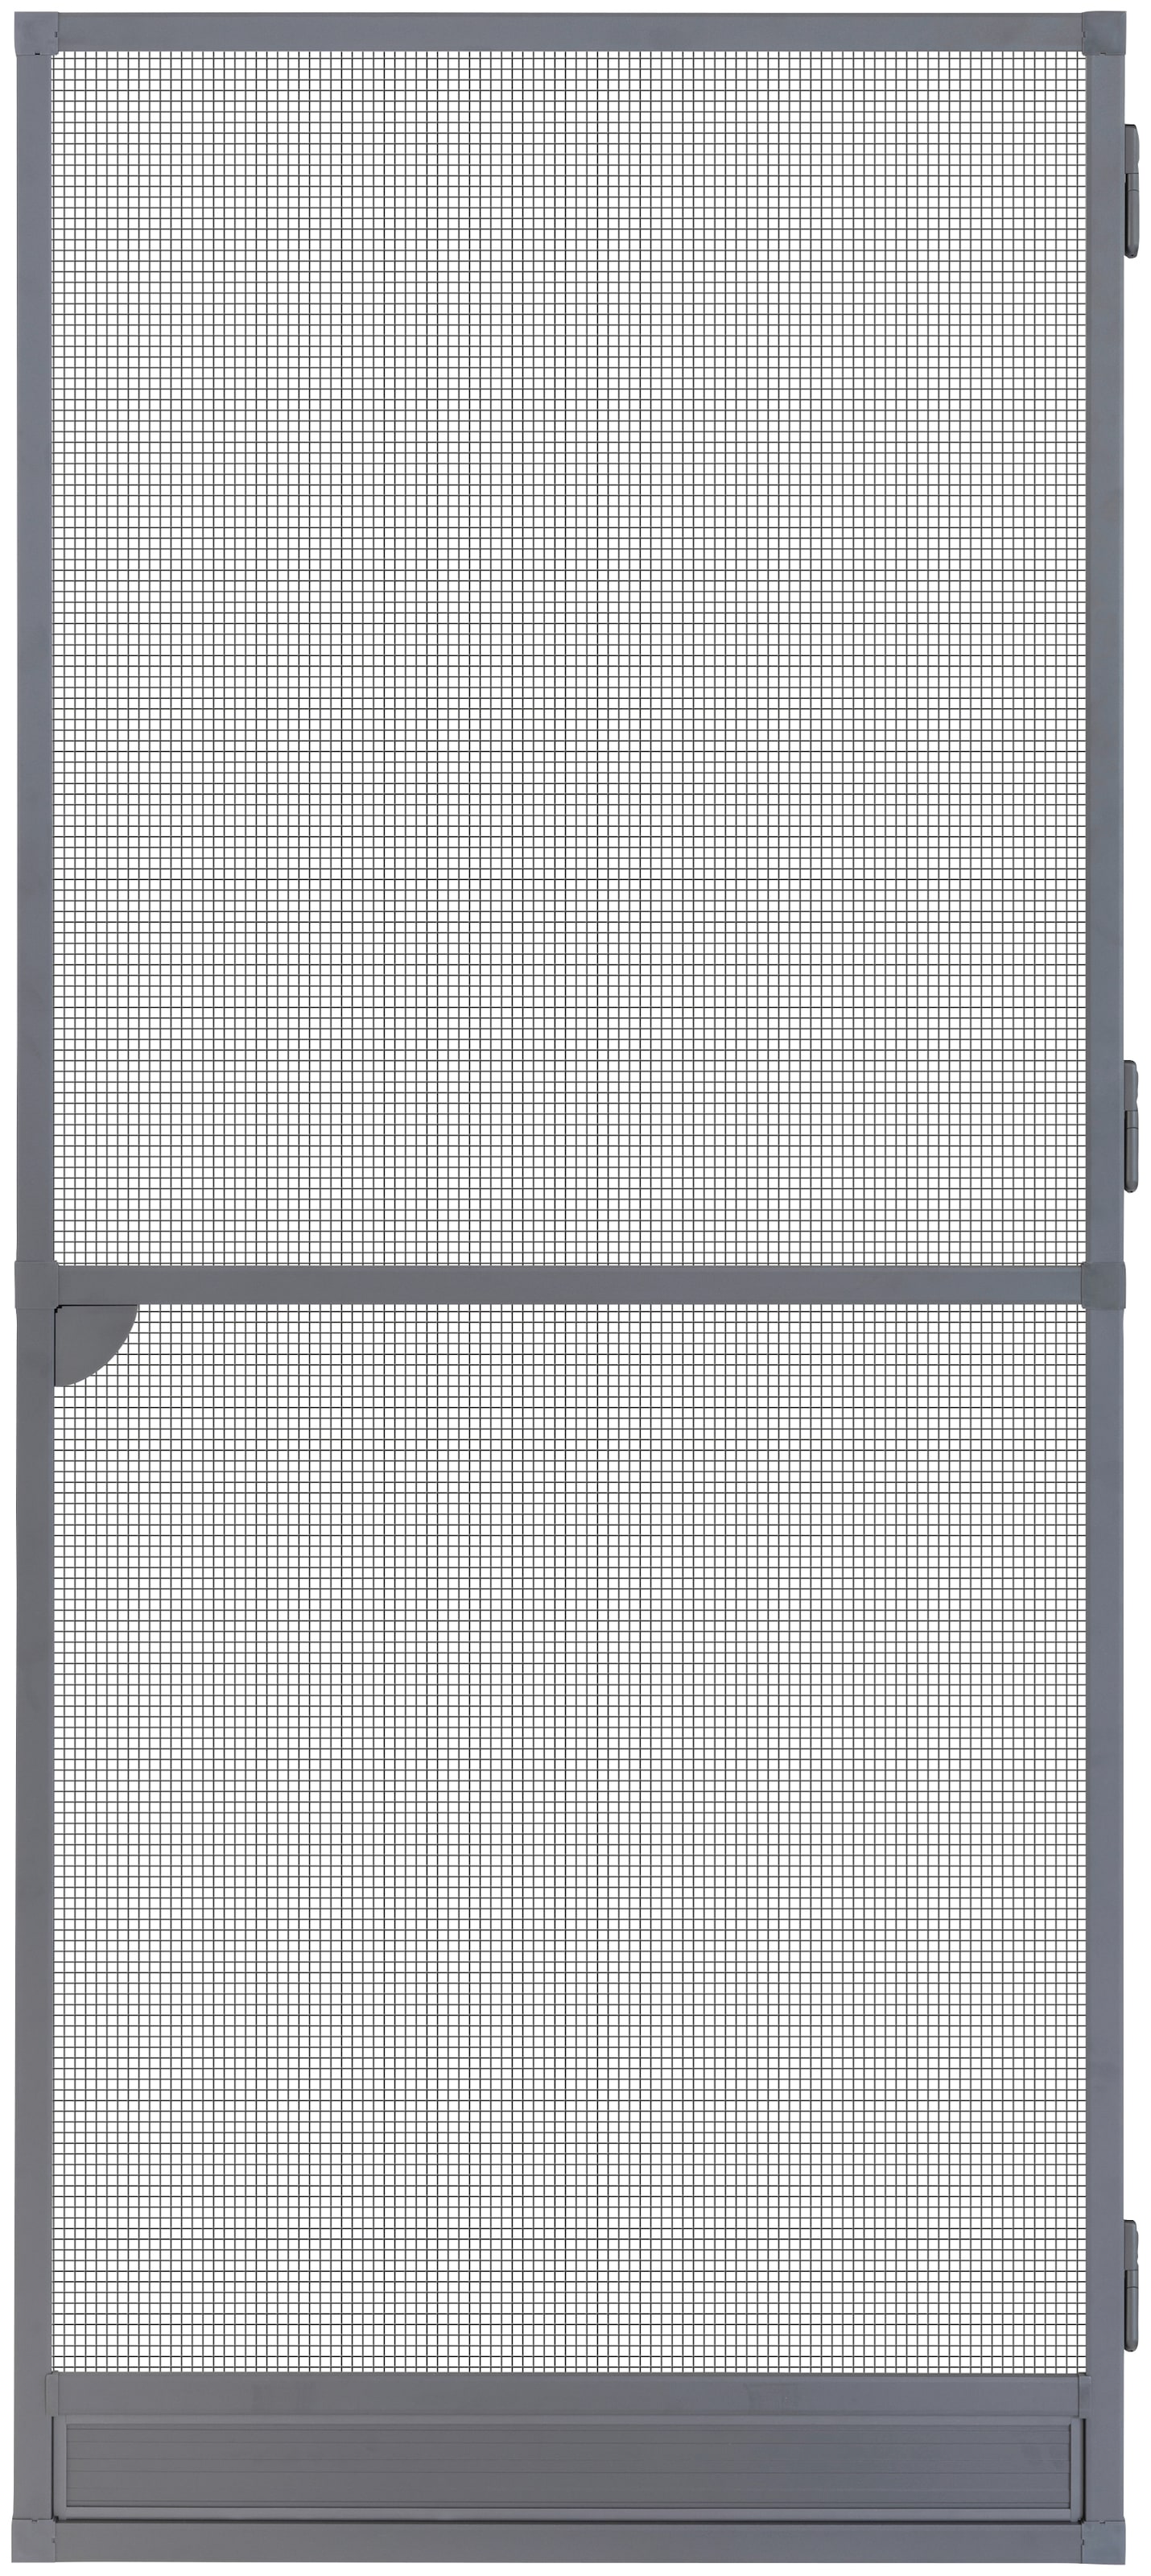 SCHELLENBERG Insektenschutz-Tür »Fliegengitter für Balkontür Premium«, Insektenschutz-Tür mit Aluminiumrahmen, 100 x 215 cm, anthrazit, 70094